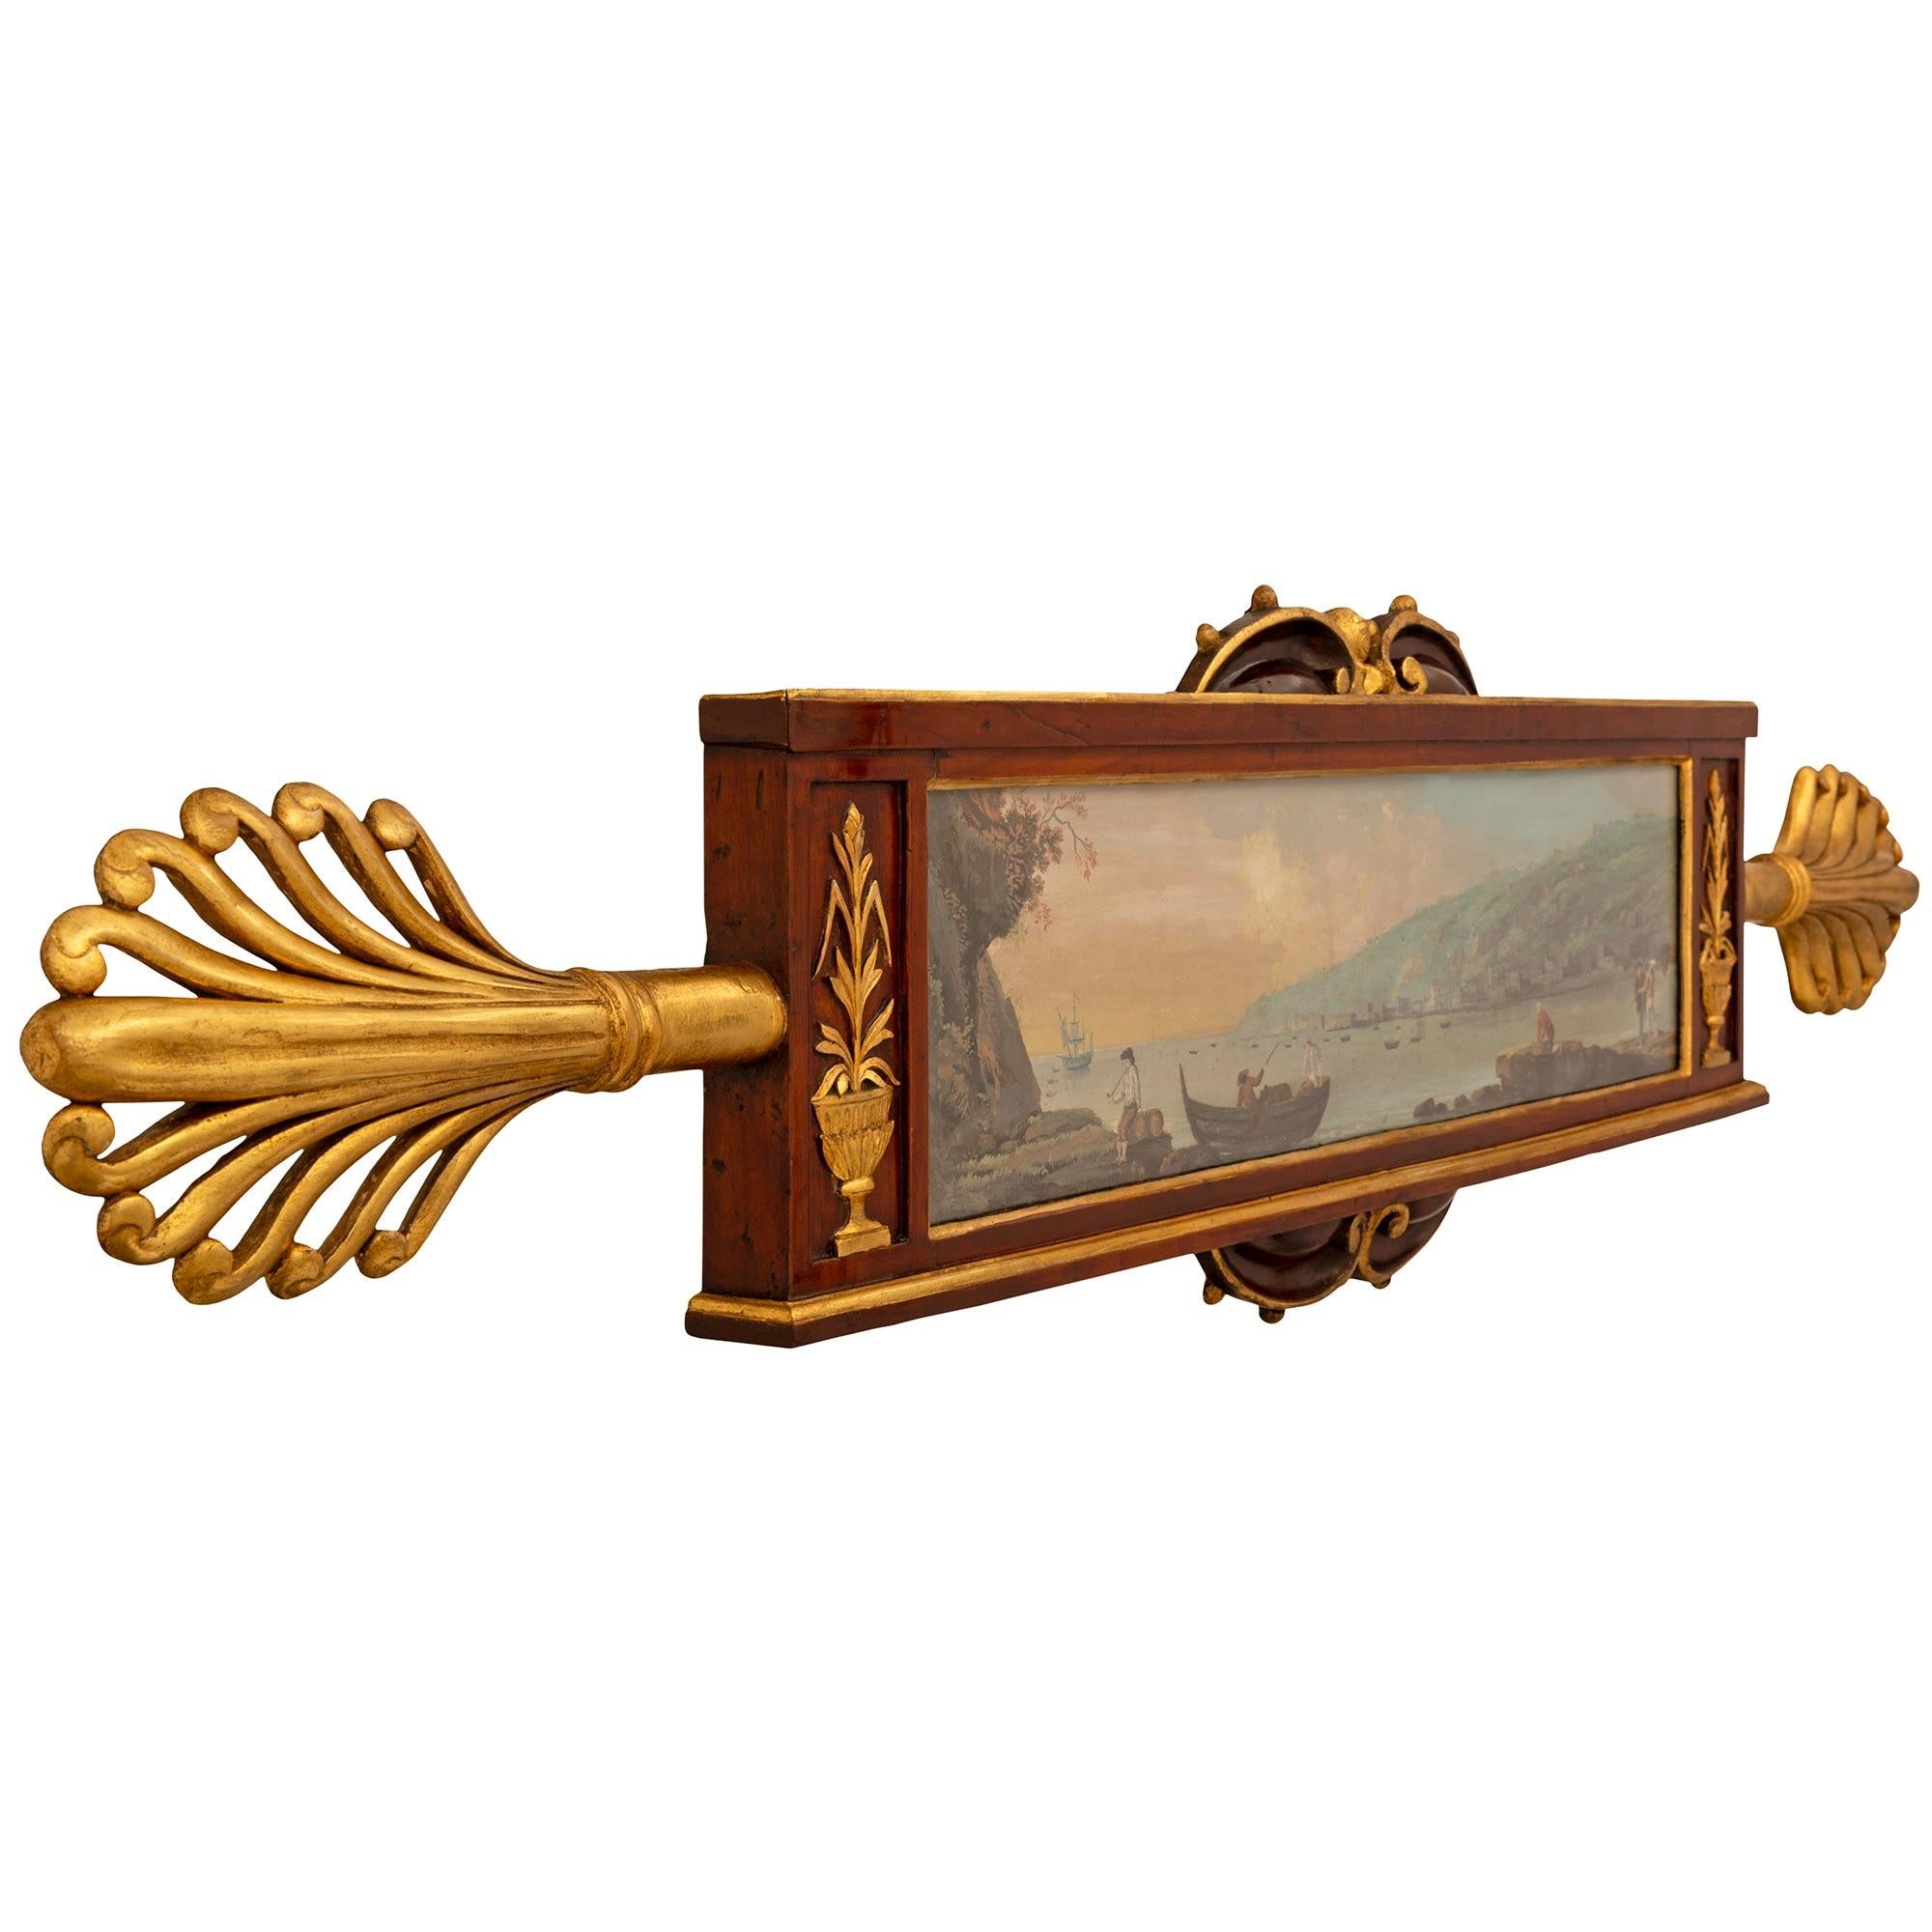 Ein einzigartiges und äußerst dekoratives Paar italienischer neoklassizistischer Gouachen aus dem frühen 19. Jahrhundert in Nussbaum- und Giltwood-Rahmen. Jede der farbenfrohen Gouachen zeigt eine Fischerszene in einer Landschaft mit verschiedenen